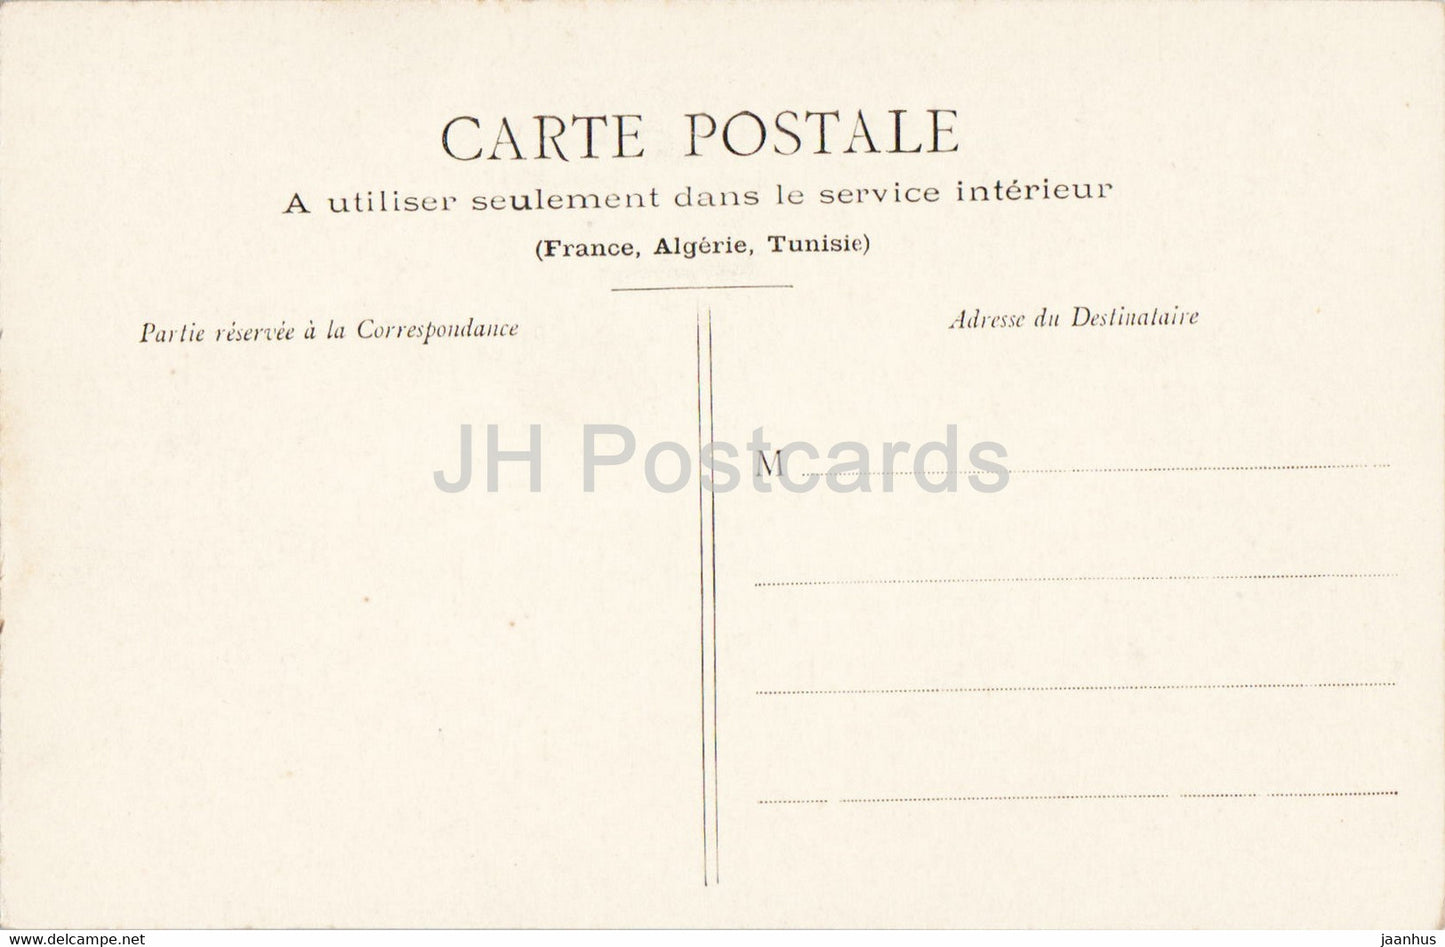 Palais de Fontainebleau - Cabinet d'Abdication de Napoleon I - 58 - old postcard - France - unused